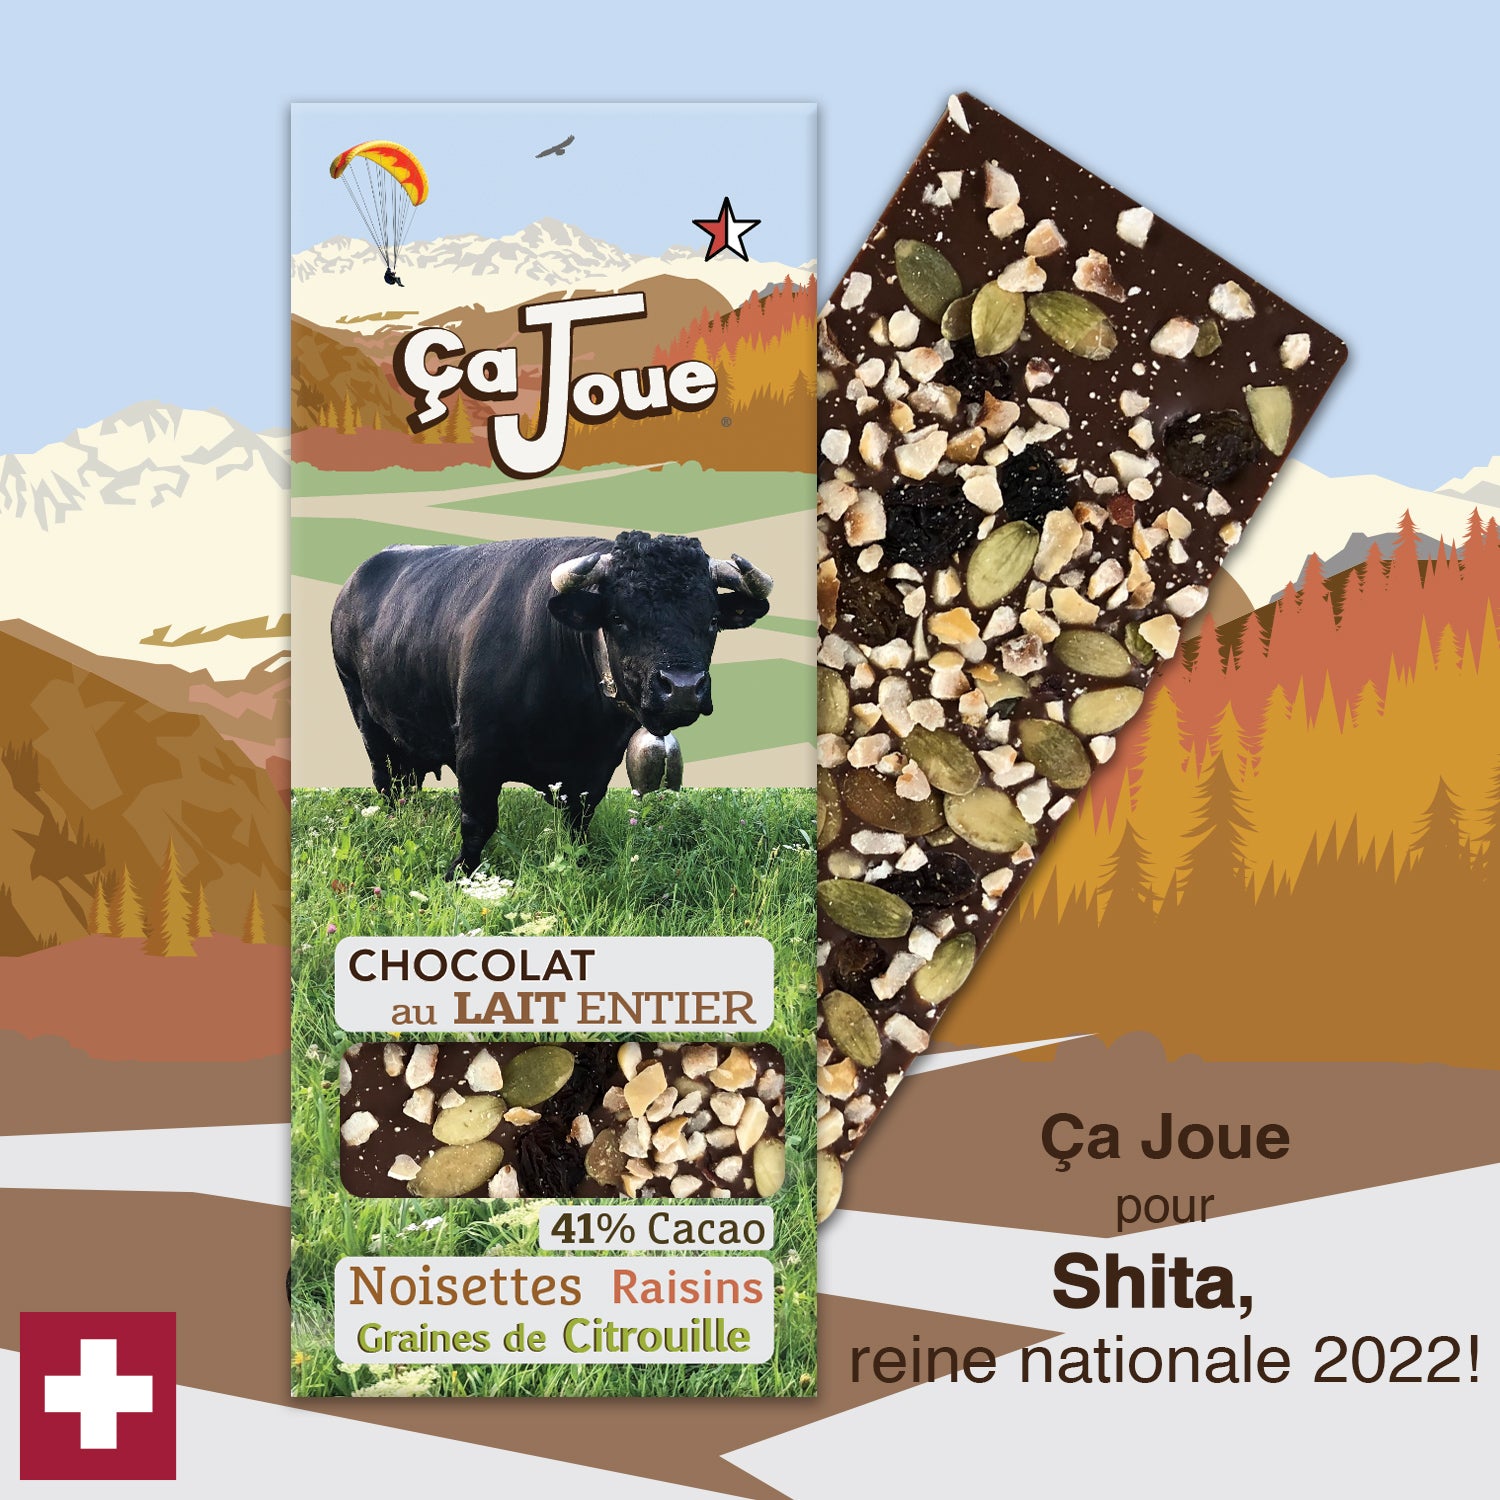 Ça Joue für die Königin Shita (Ref-BL10) Milchschokolade aus Val de Bagnes